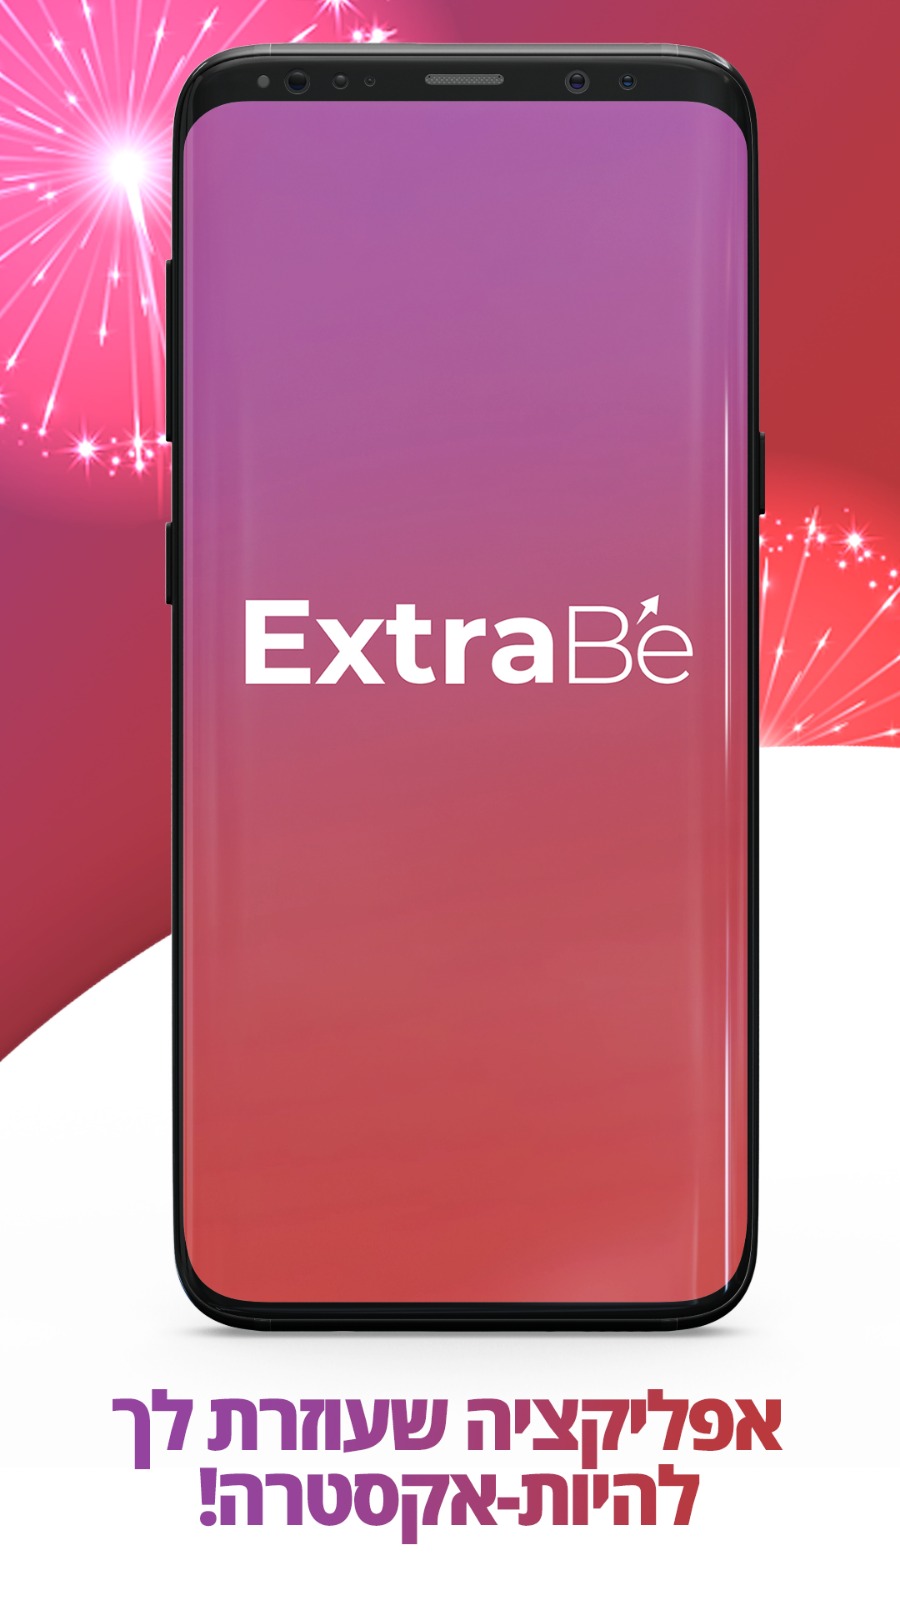 מנוי פרימיום לאפליקצית ExtraBe -  מסלול שנתי